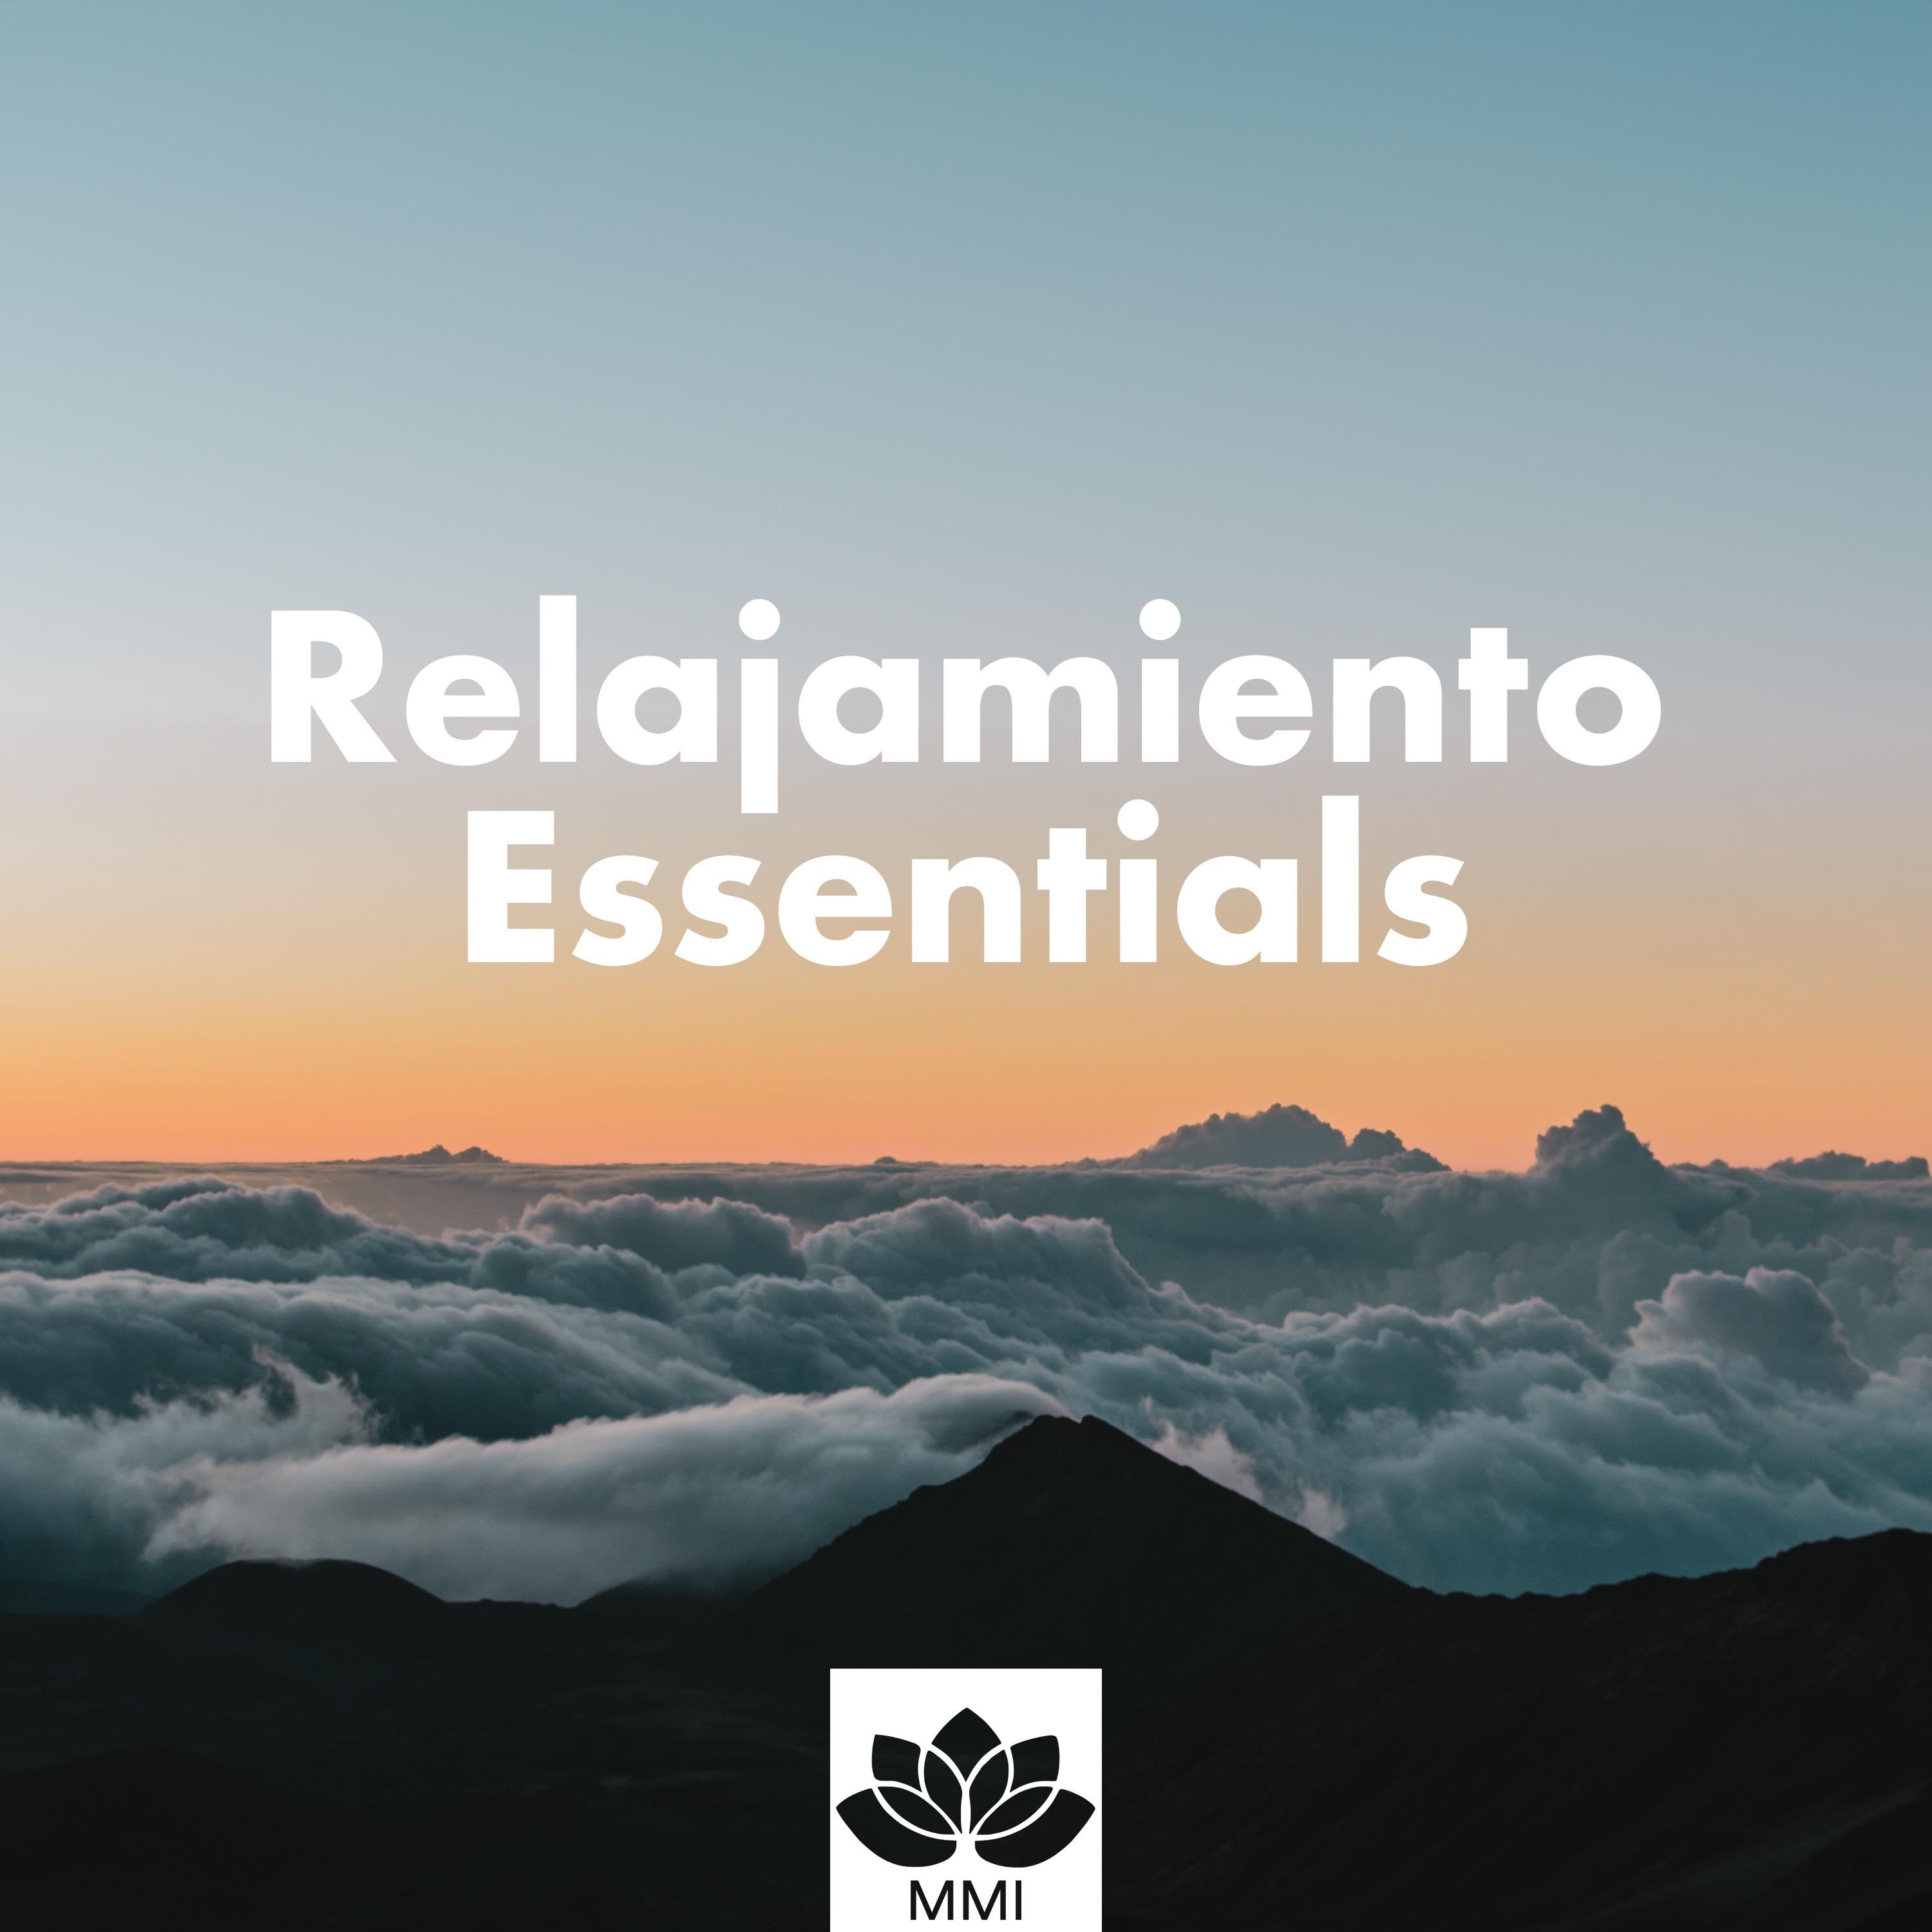 Relajamiento Essentials - Una Colleción de las Mejores Canciones Relajantes para Restaurantes, Hoteles, Spa y Centros de Bienestar